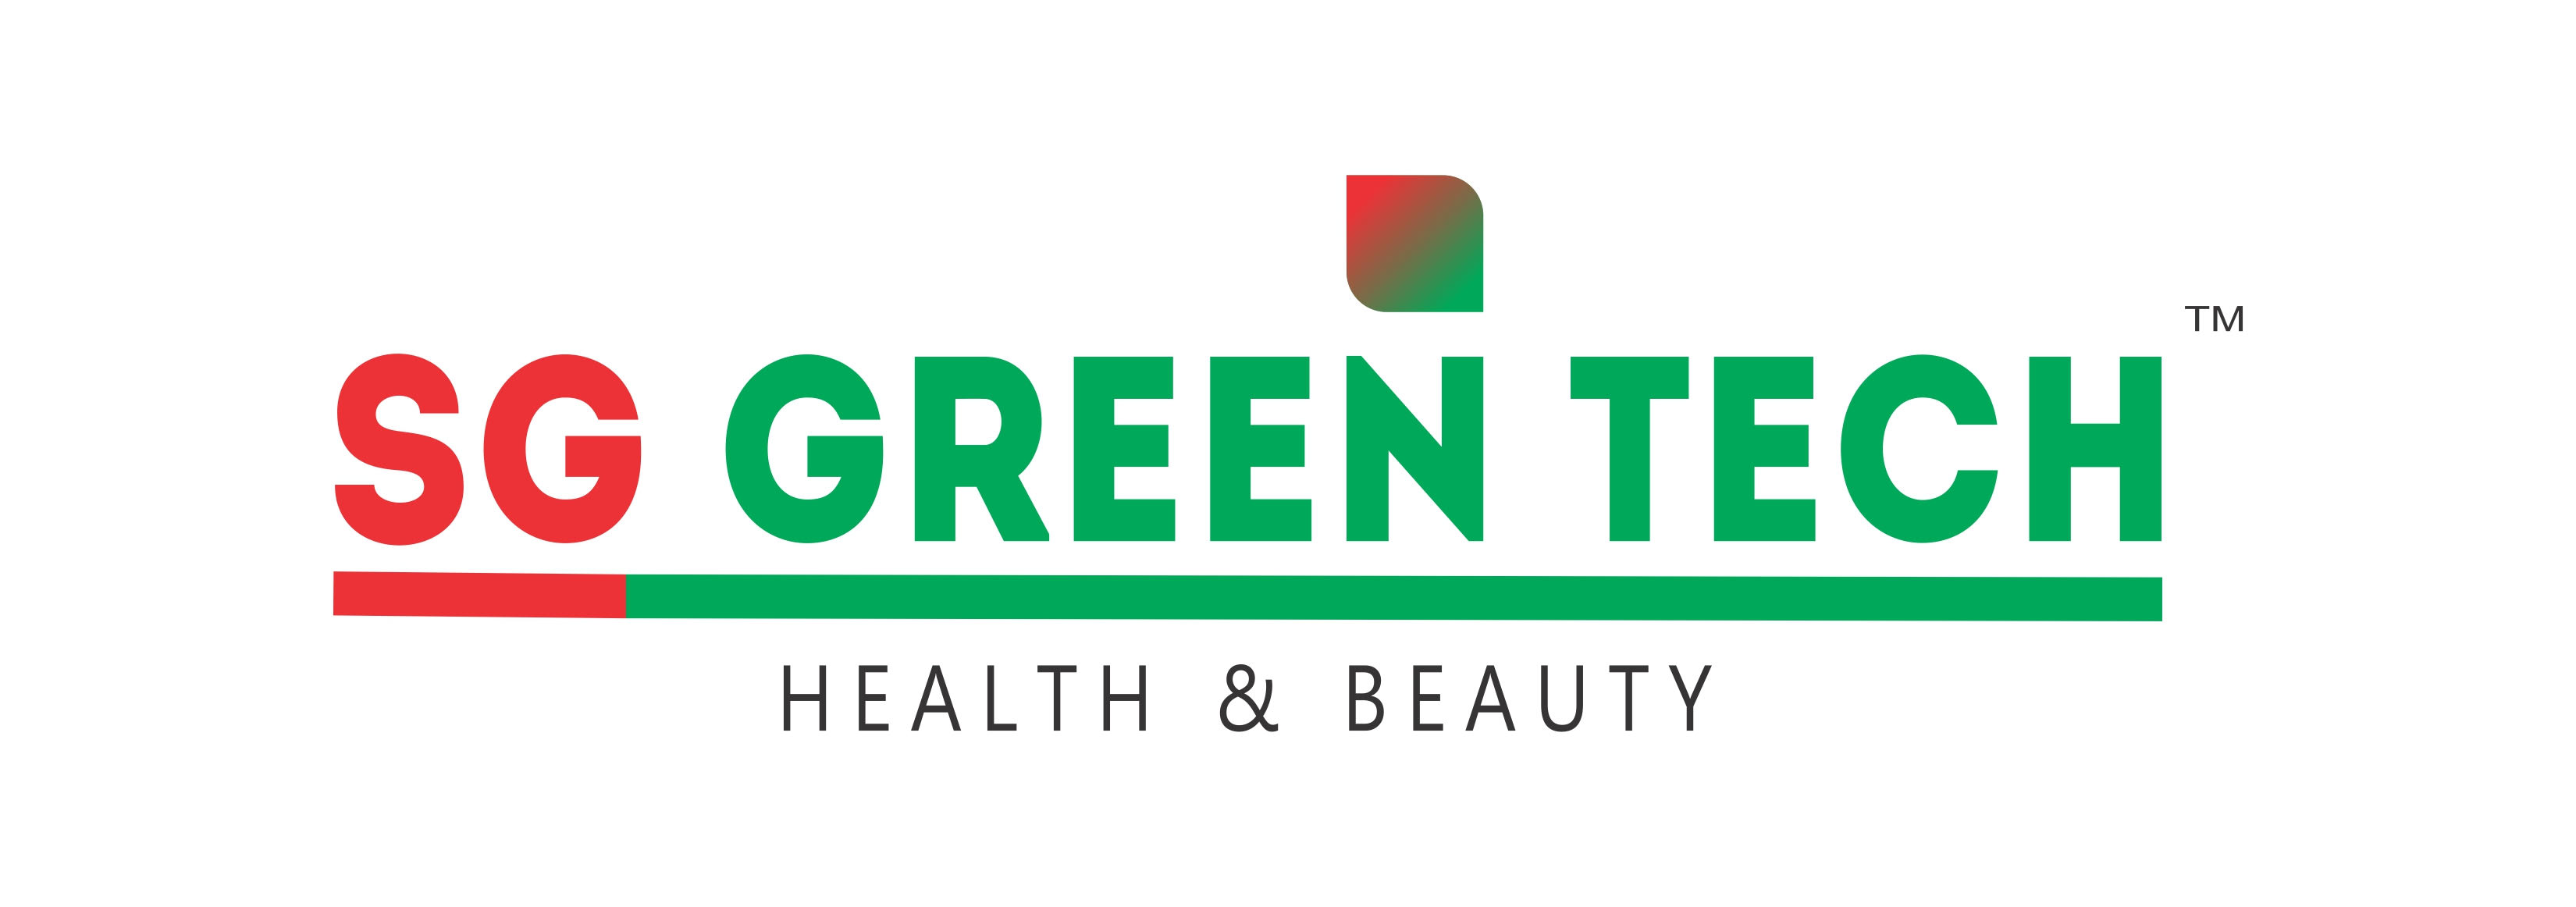 SG Green Tech Health & Beauty